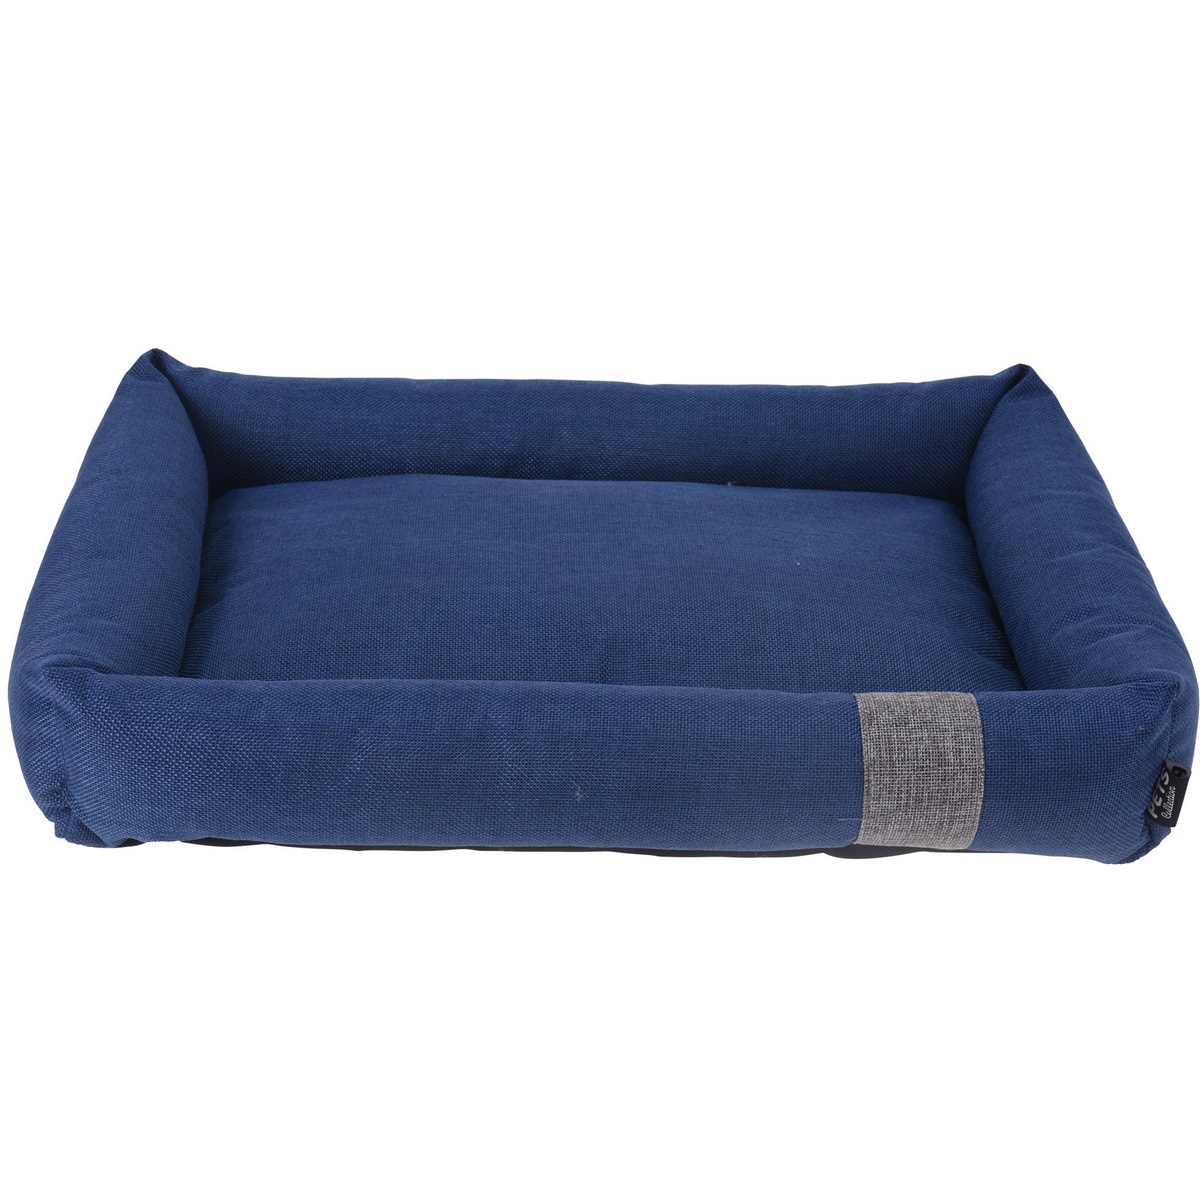 Pelíšek pro psa Pet bed modrá, 55 x 41 x 10 cm